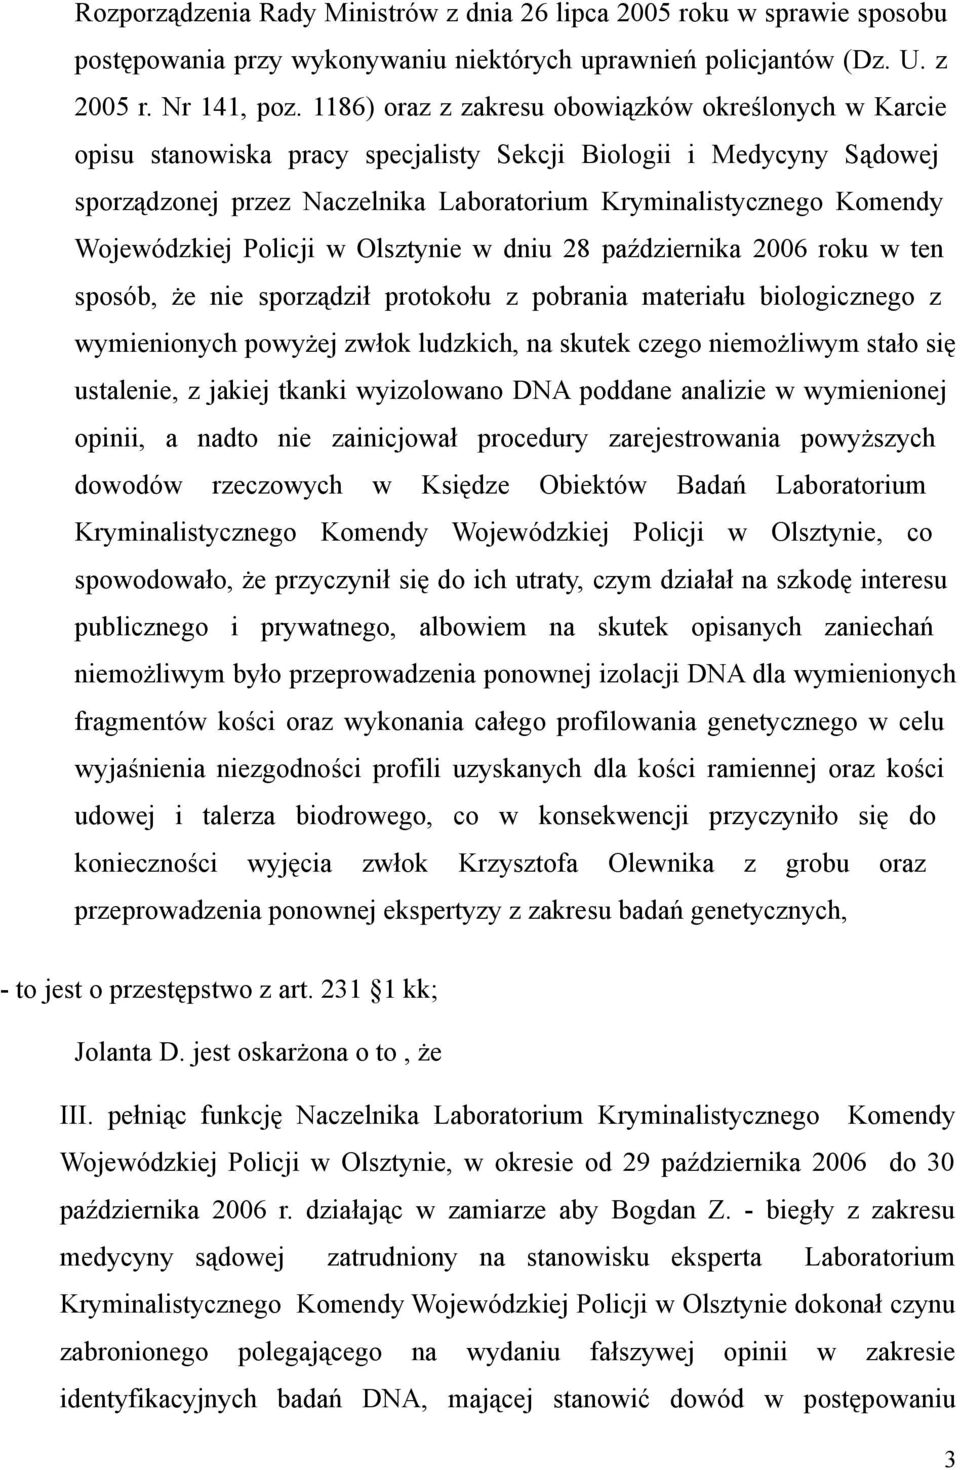 Wojewódzkiej Policji w Olsztynie w dniu 28 października 2006 roku w ten sposób, że nie sporządził protokołu z pobrania materiału biologicznego z wymienionych powyżej zwłok ludzkich, na skutek czego